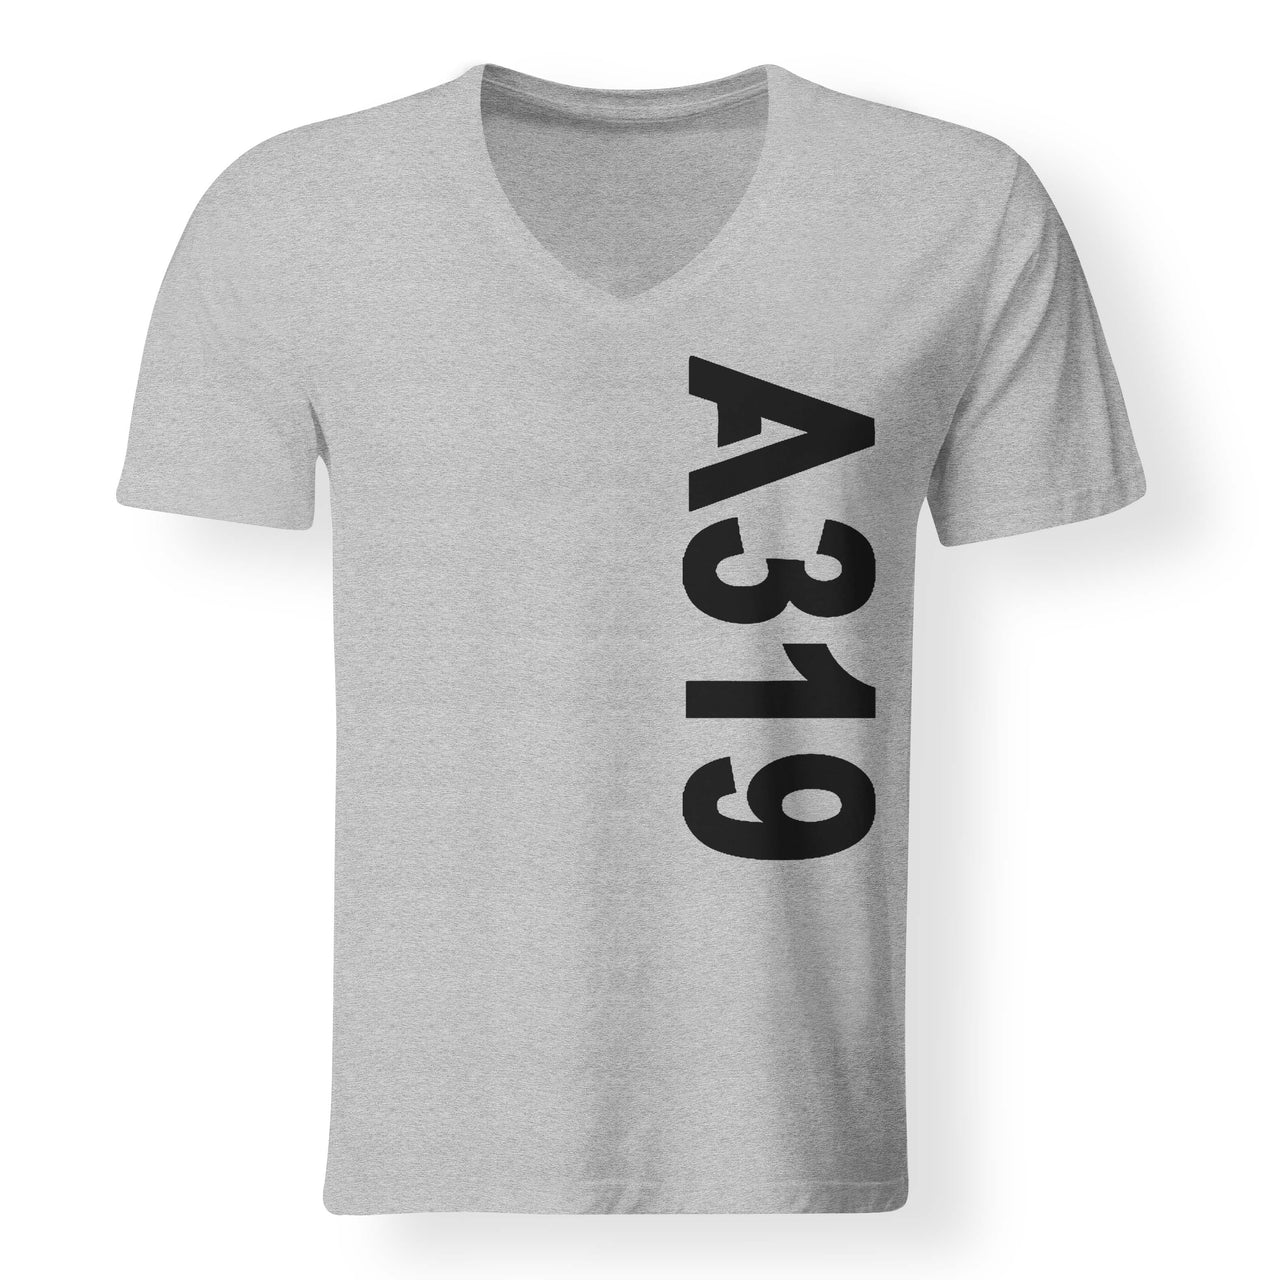 A319 Text Designed V-Neck T-Shirts